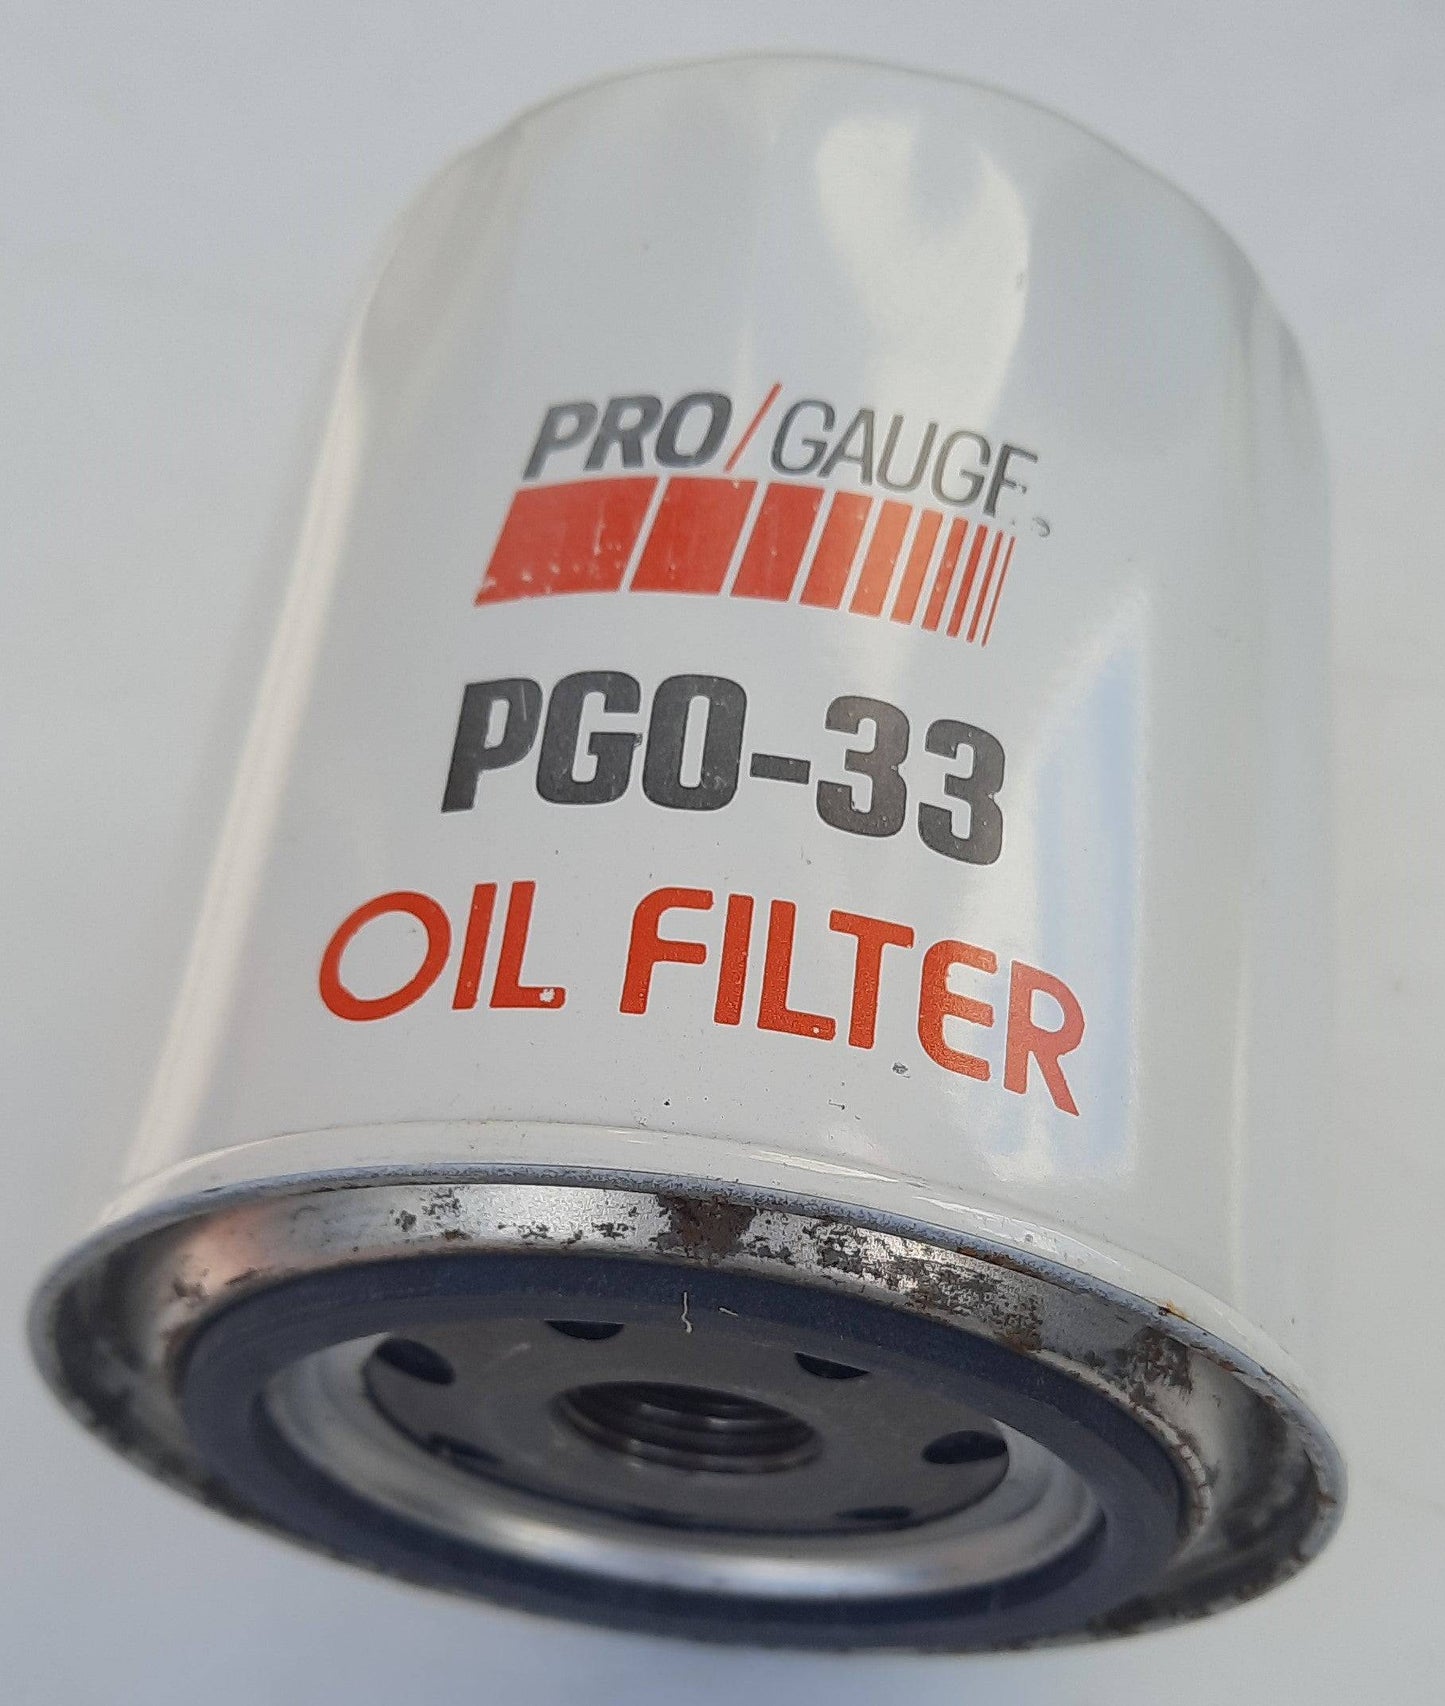 Oil Filter - Belcher Engineering